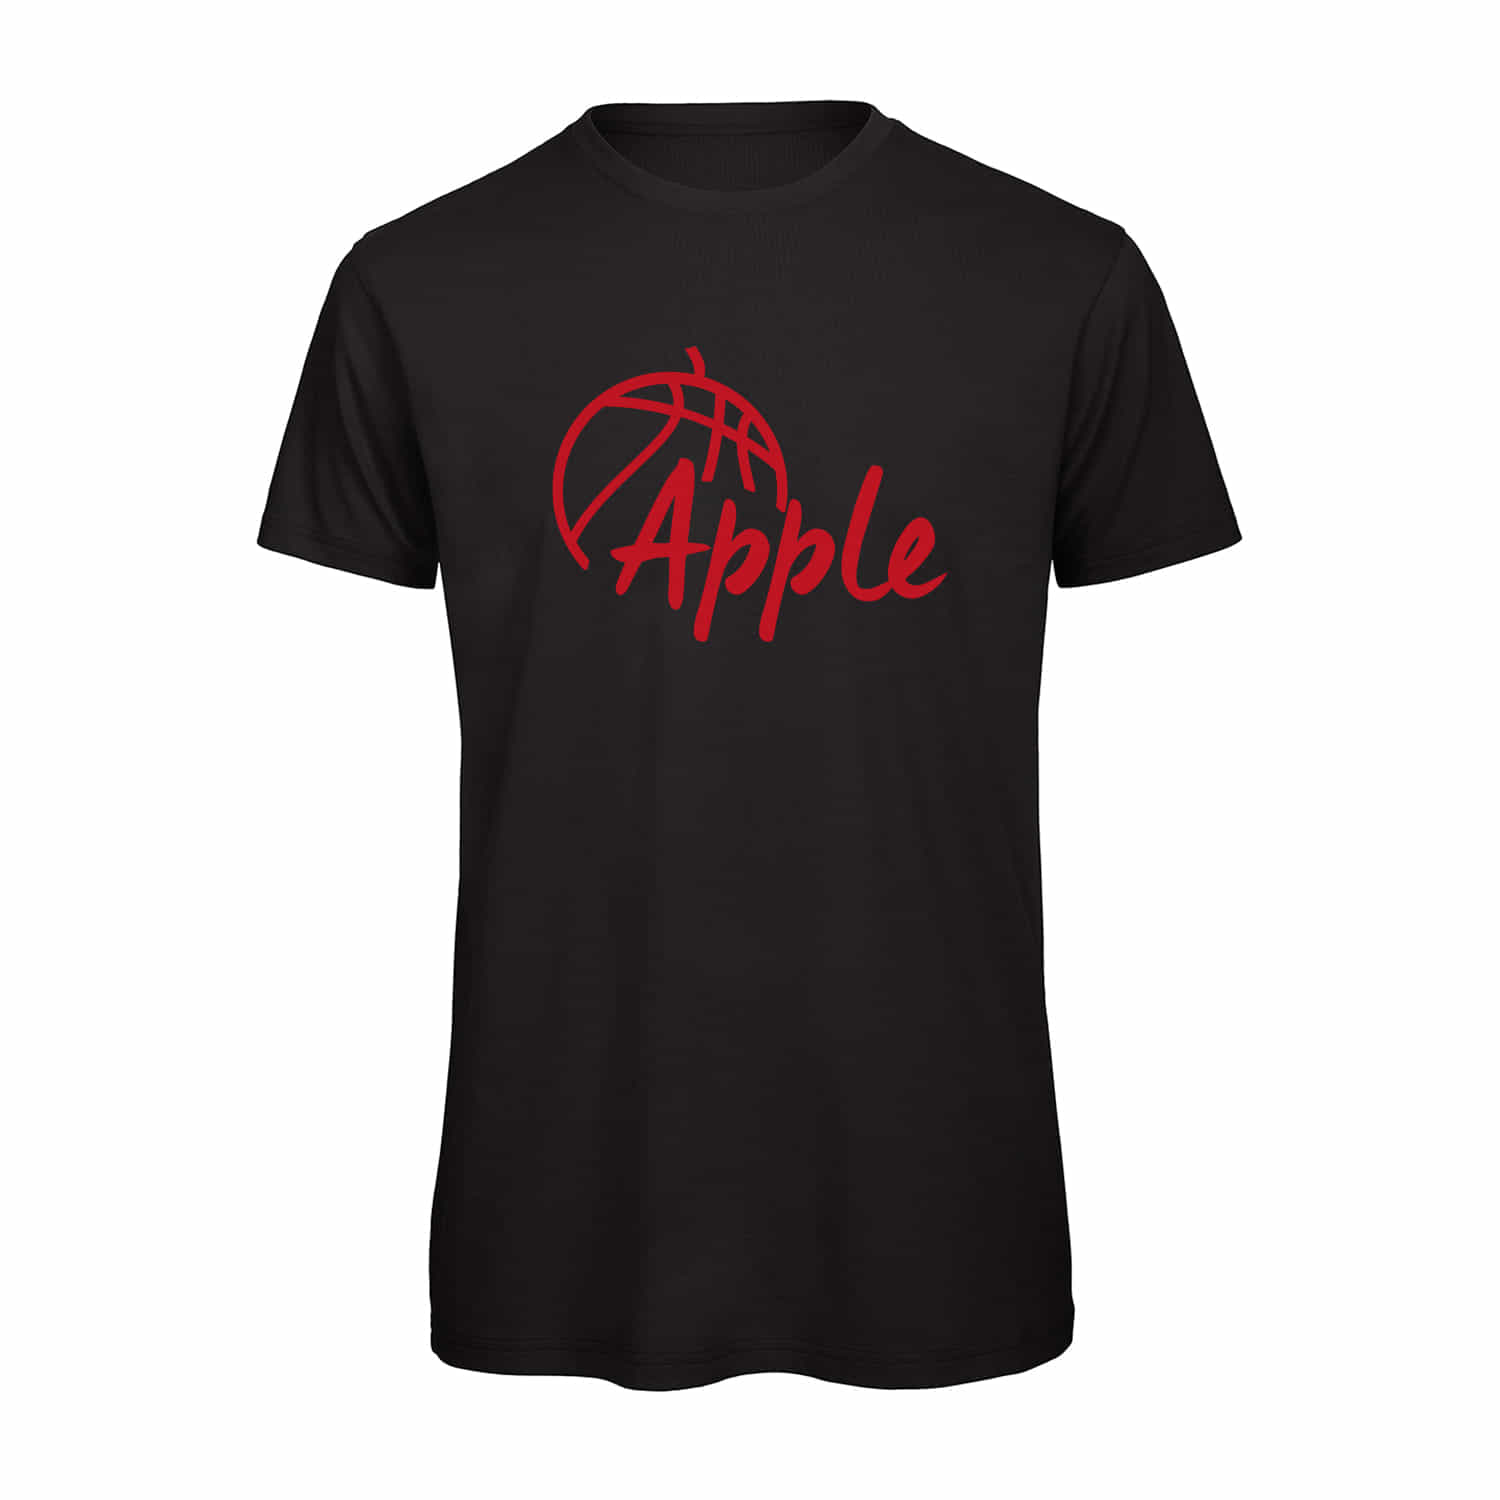 Herren T-Shirt "Apple"